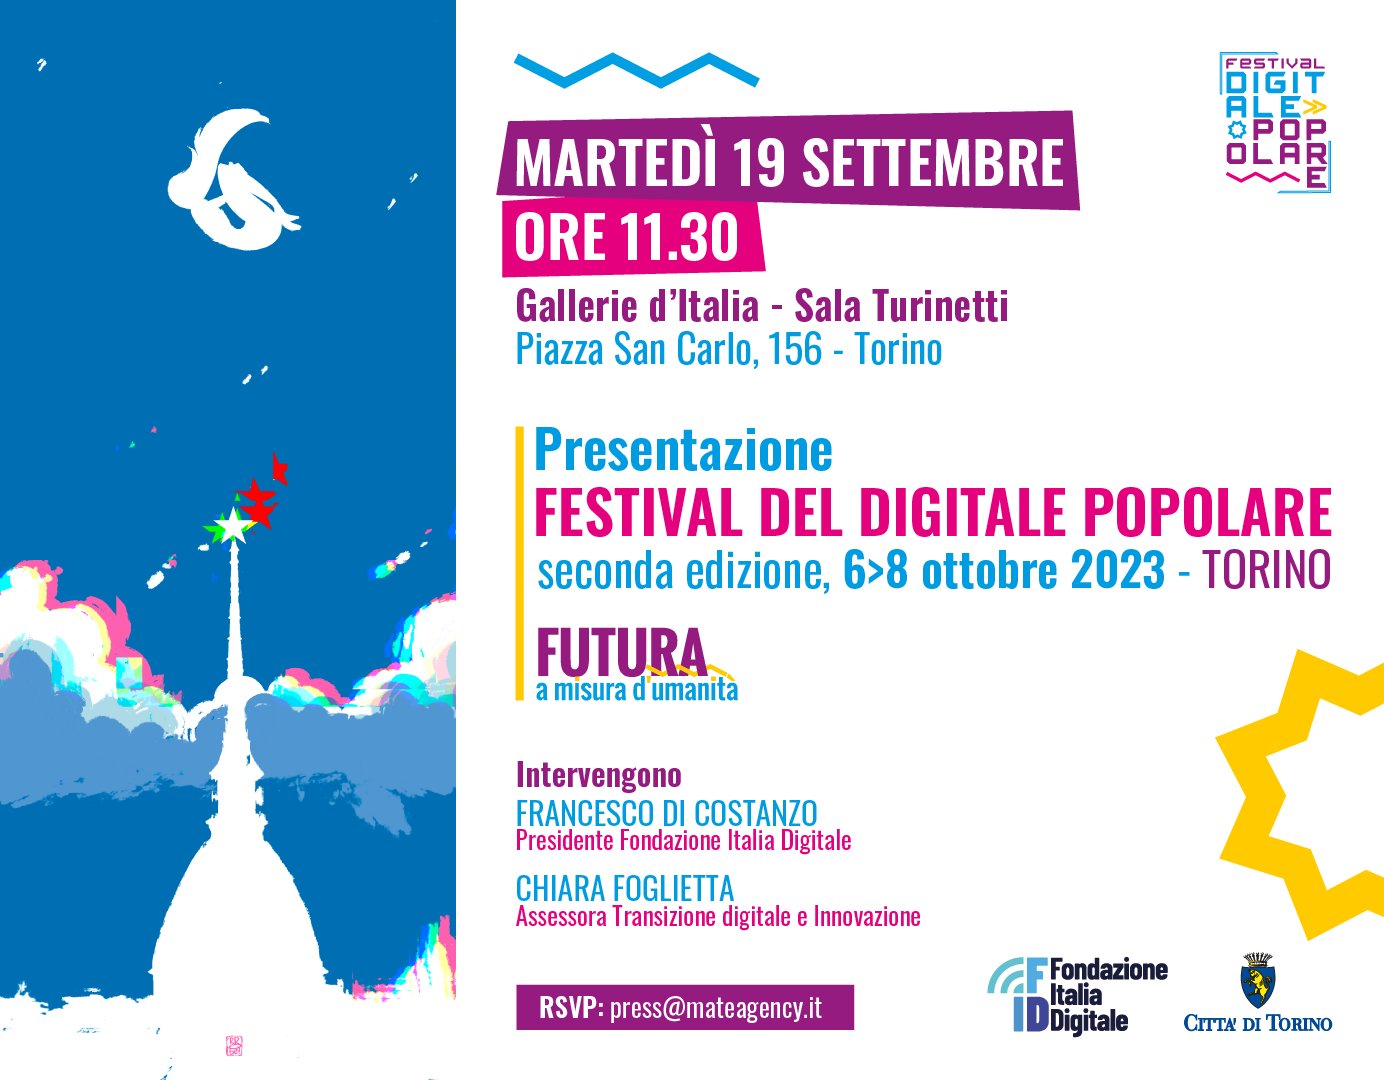 Presentazione seconda edizione del Festival del Digitale Popolare